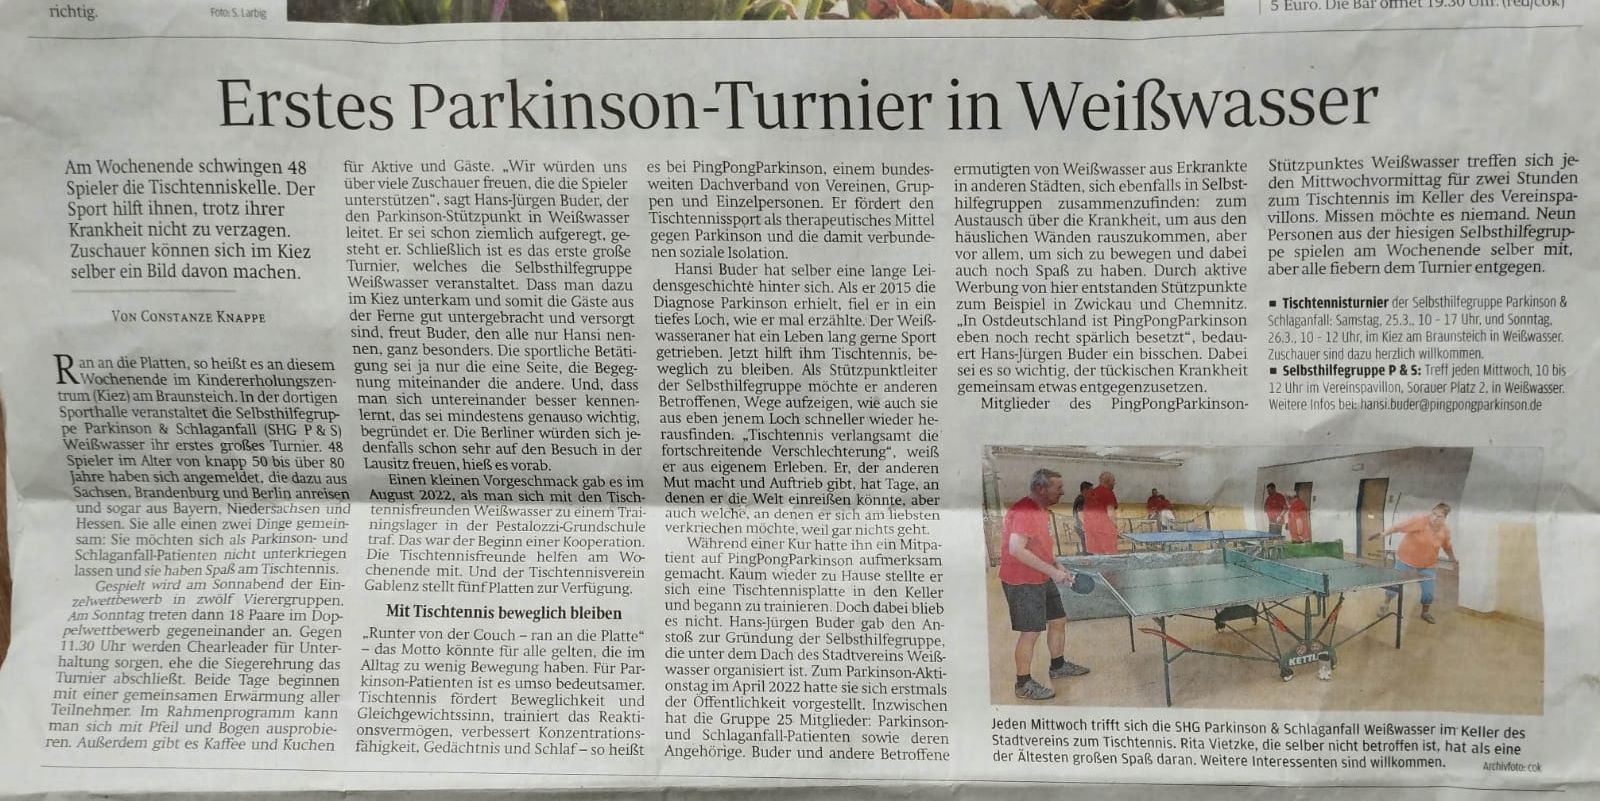 Erstes Parkinson-Turnier in Weißwasser